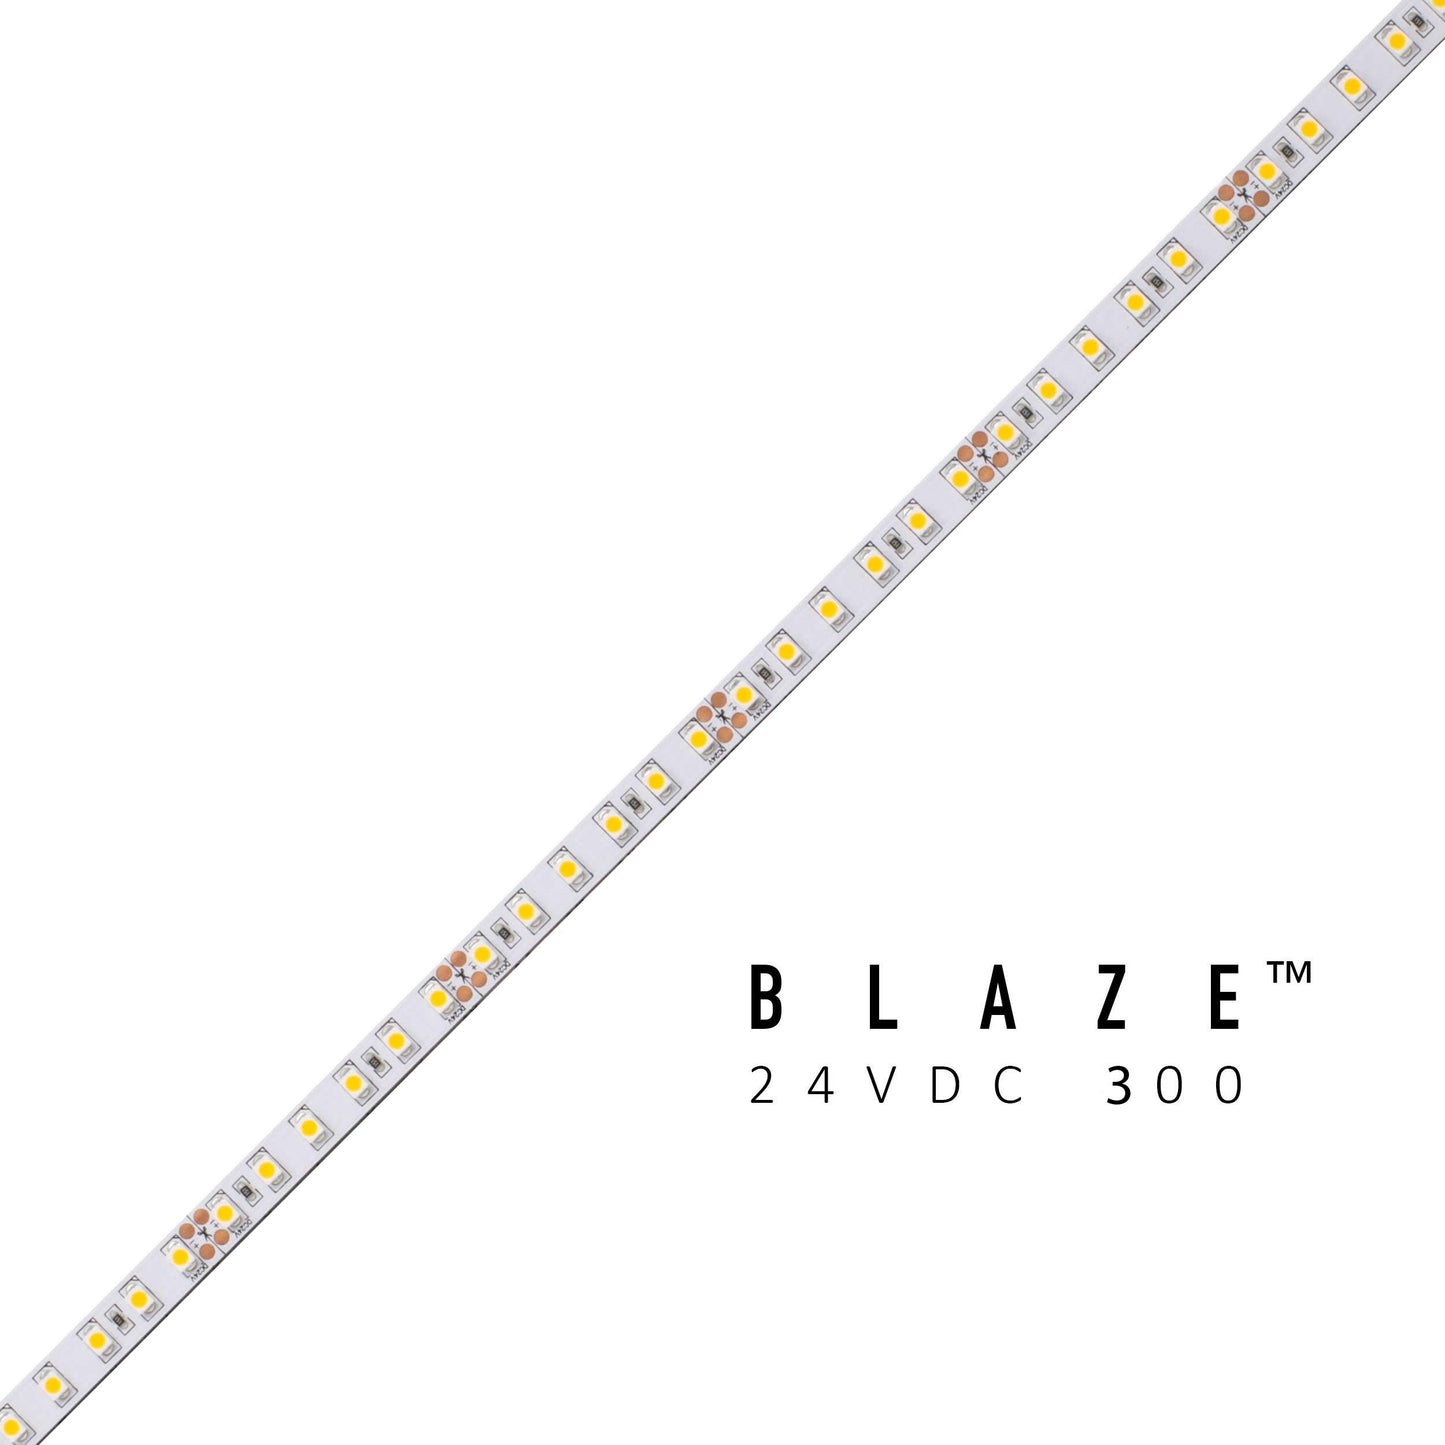 Diode LED DI-24V-BLBSC3-30-100 100ft Spool Blaze 300+ Lumen Per Foot LED Tape Light 3000K 24V DC